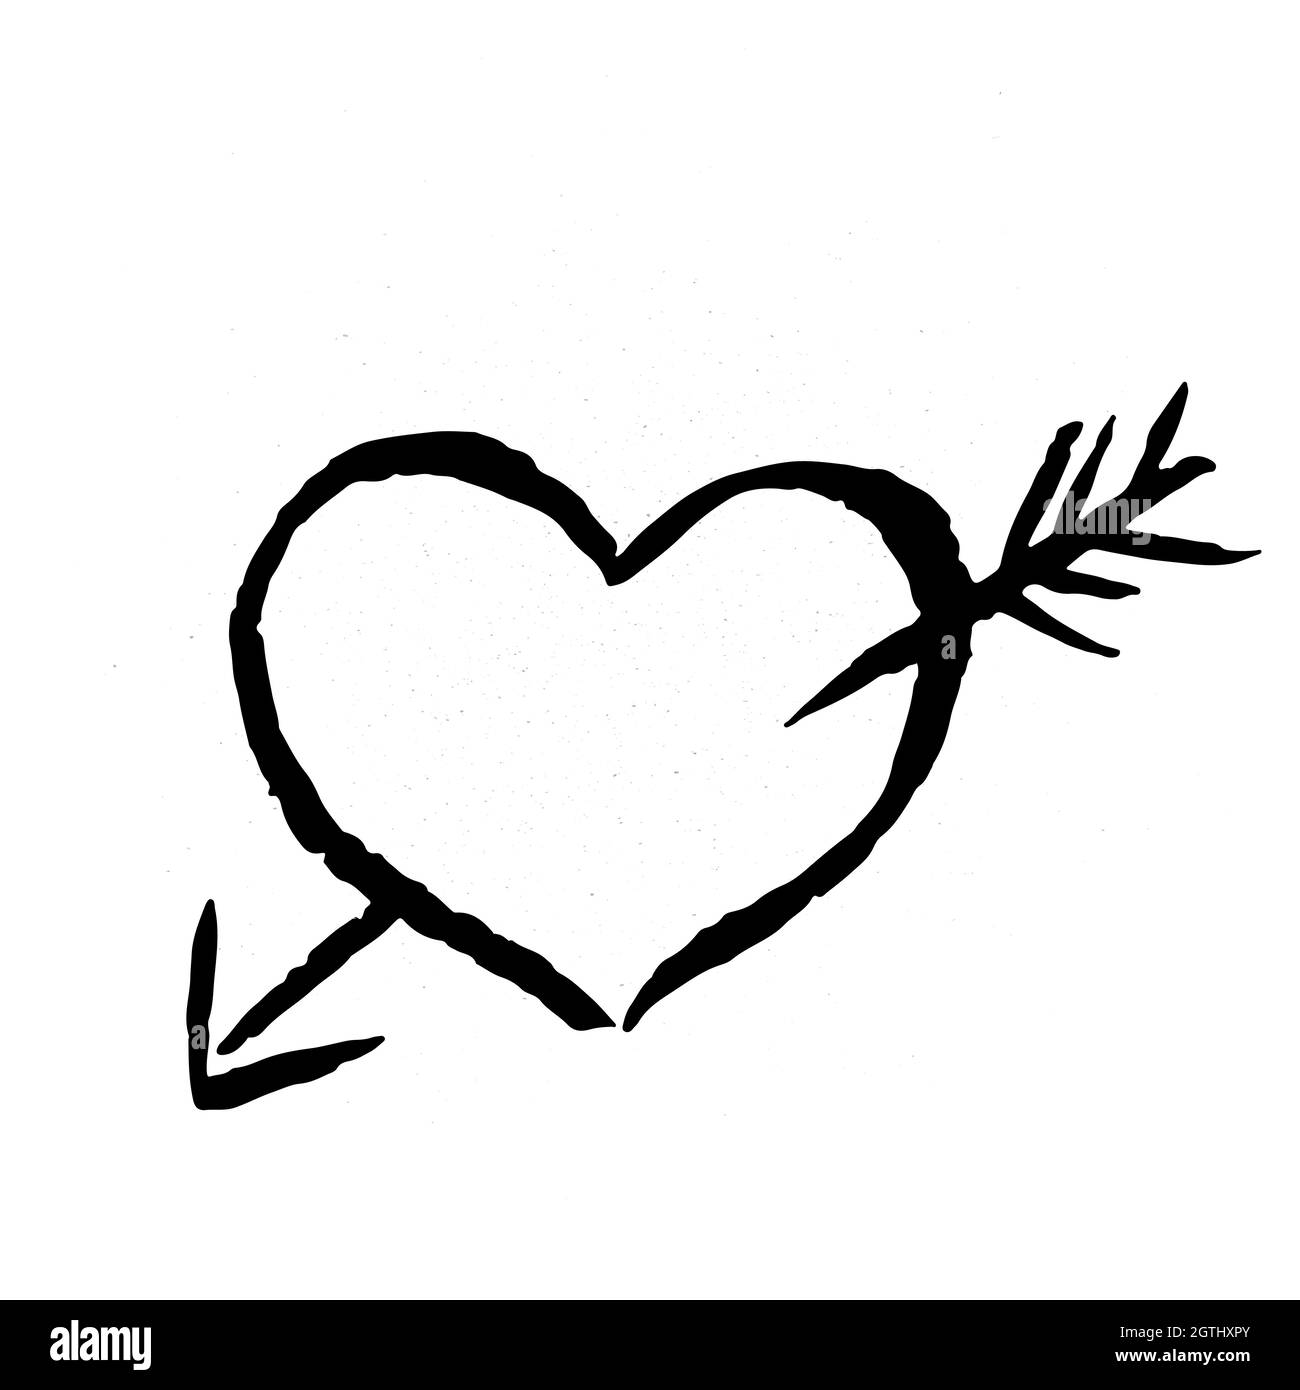 Handgezeichnetes Herz mit Pfeil auf weißem Hintergrund. Grunge Form des Herzens. Schwarzer strukturierter Pinselstrich. Valentinstag Zeichen. Liebessymbol. Einfach zu bearbeiten V Stock Vektor